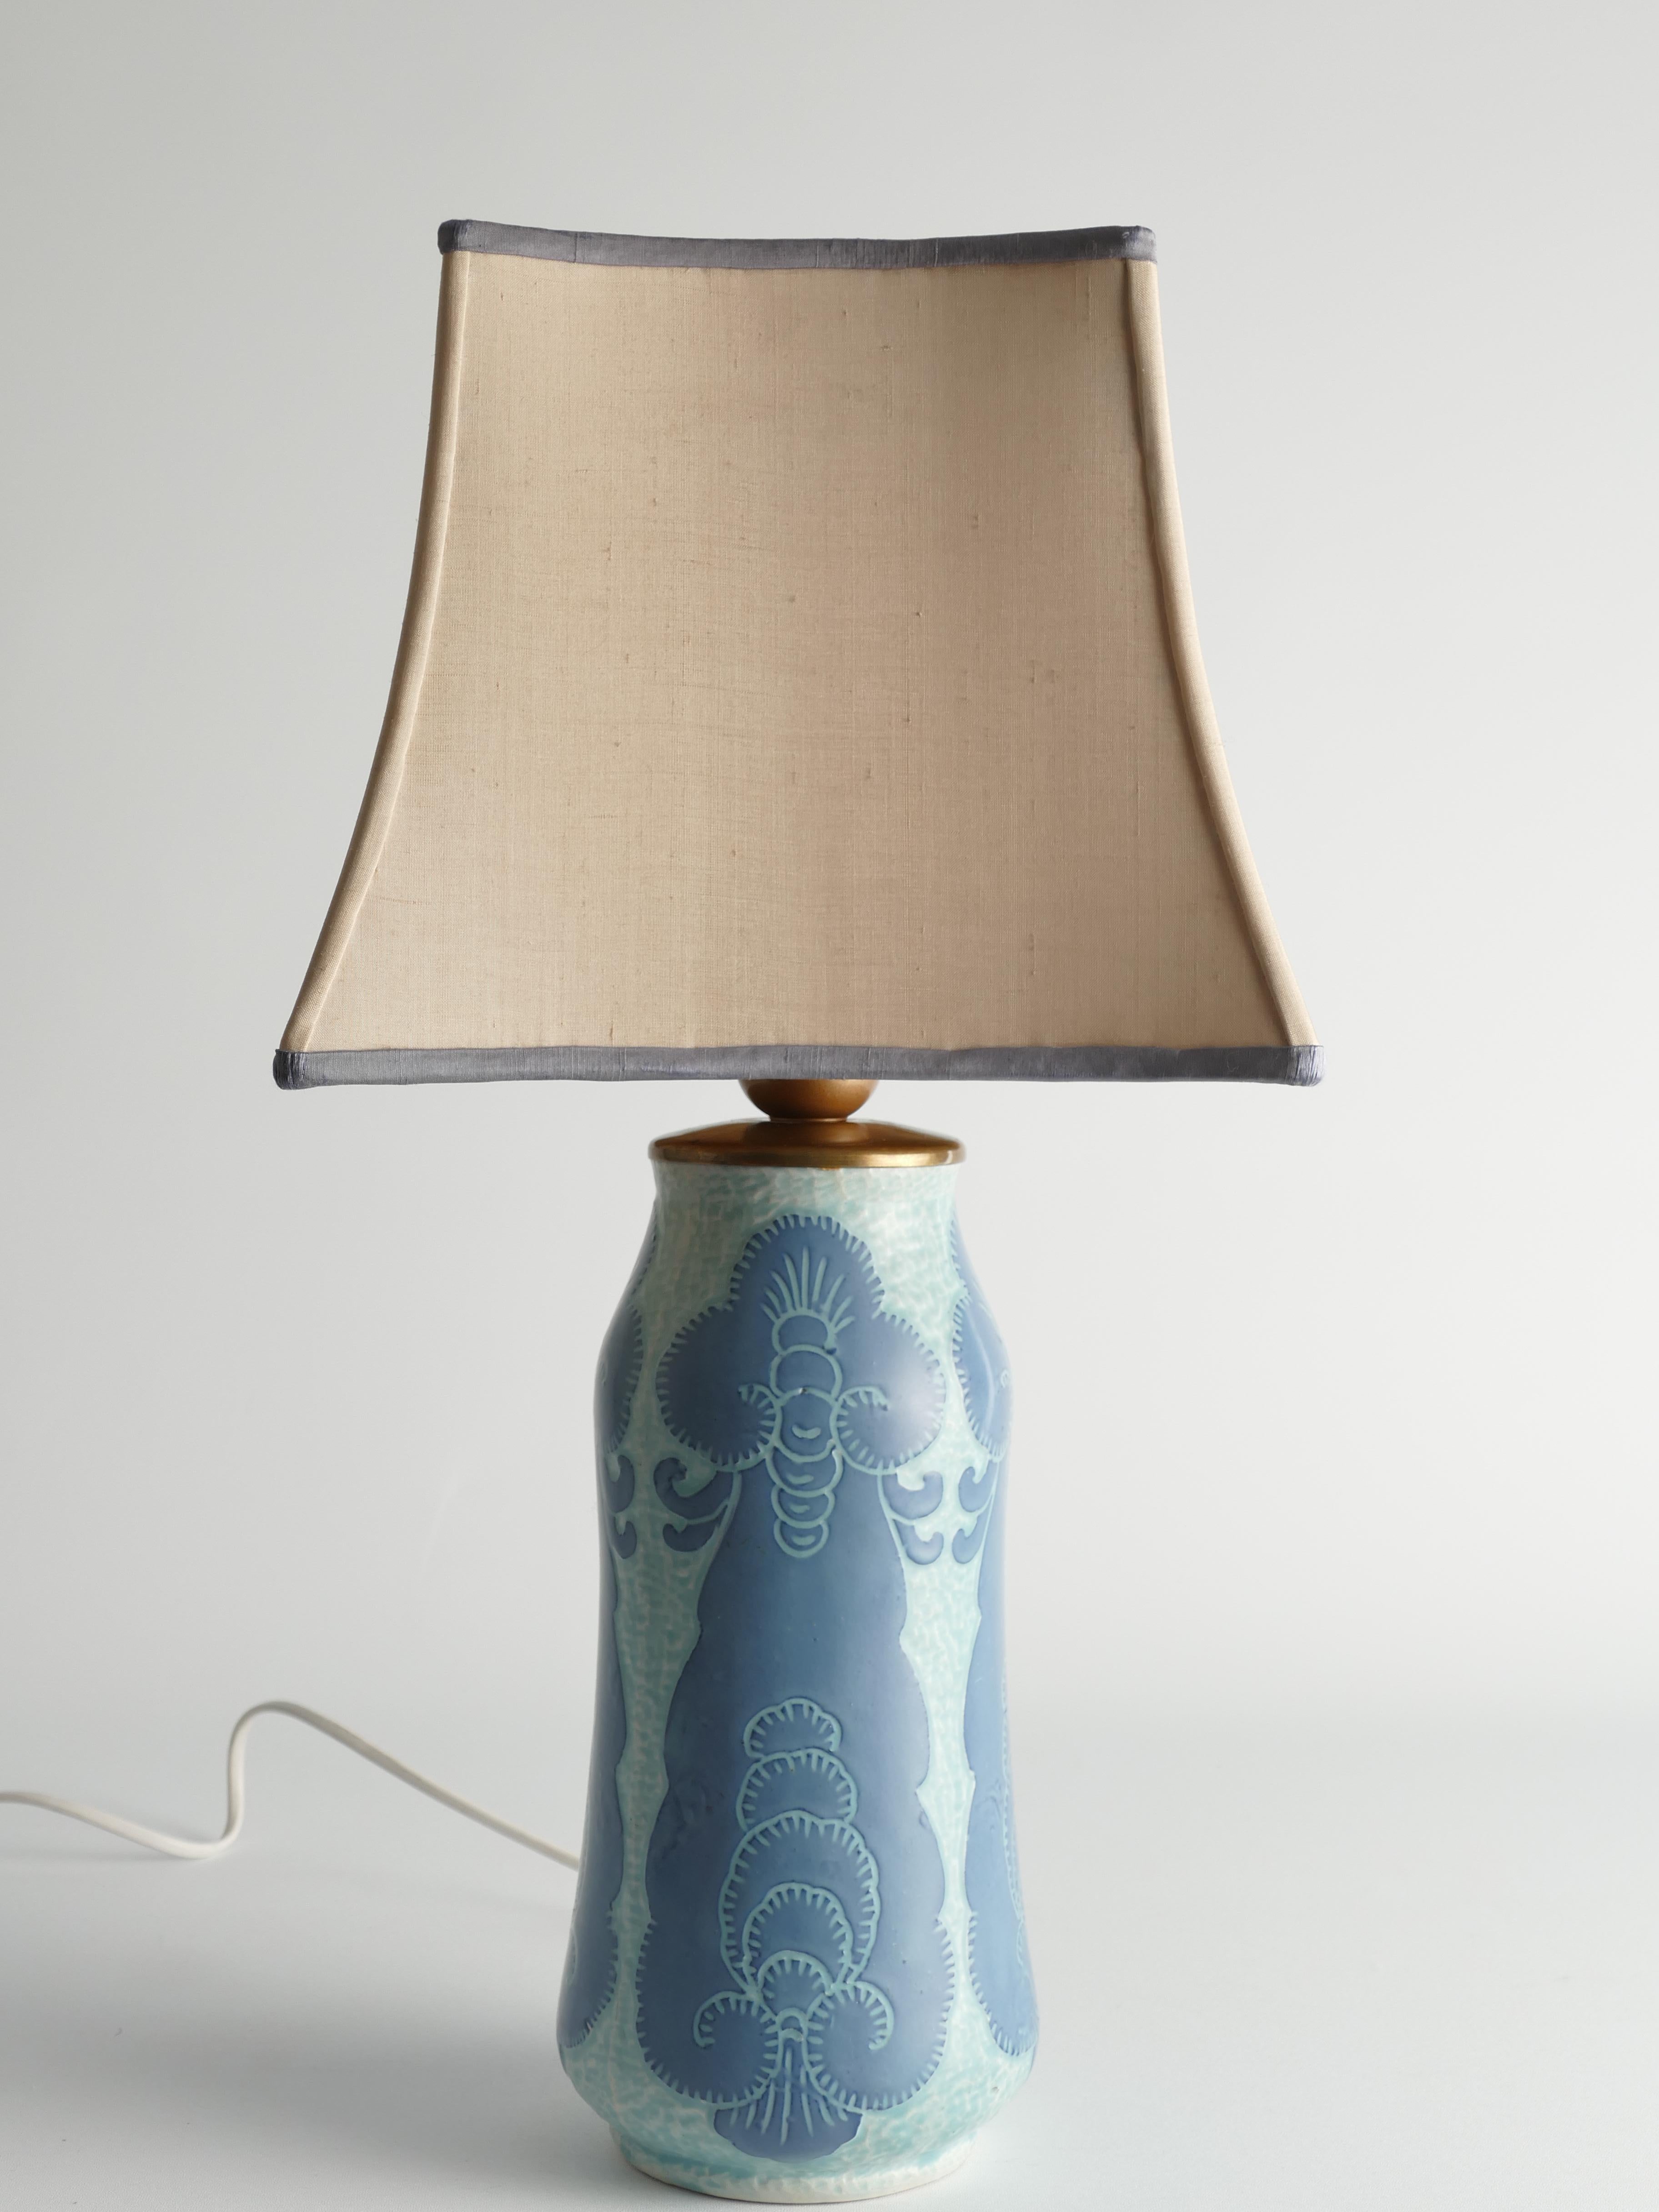 Unique Art Nouveau Pale Blue Ceramic Table Lamp by Josef Ekberg for Gustavsberg For Sale 2